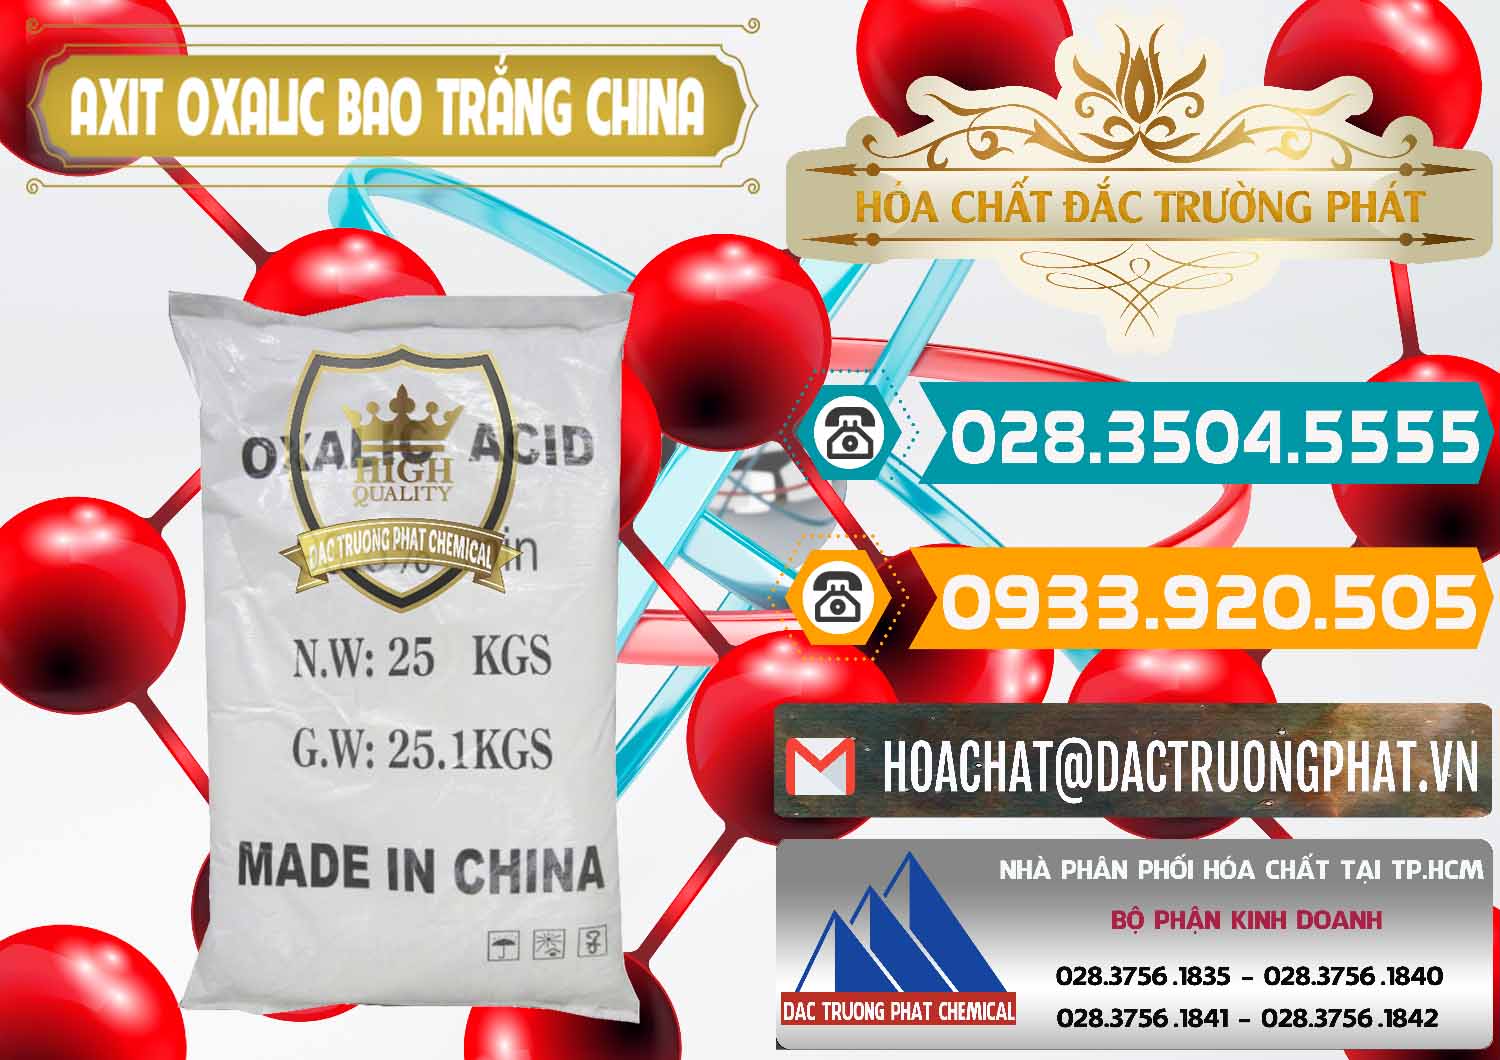 Chuyên bán & cung ứng Acid Oxalic – Axit Oxalic 99.6% Bao Trắng Trung Quốc China - 0270 - Bán và cung cấp hóa chất tại TP.HCM - congtyhoachat.vn